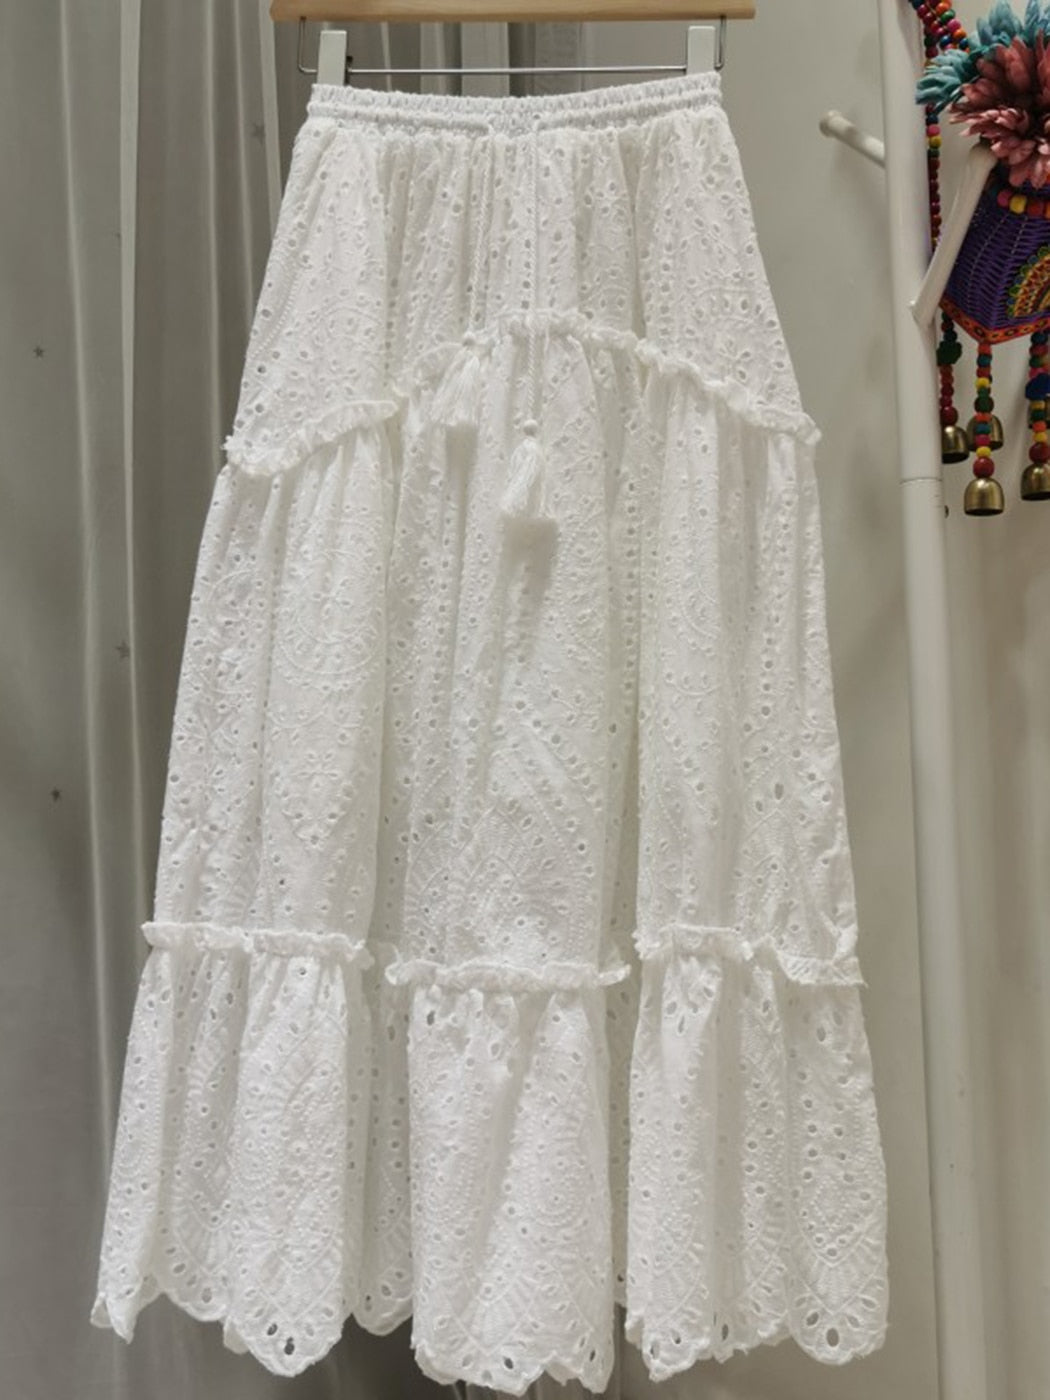 Jastie Boho Elegant White Long Skirt Women Hook Flower Hollow Folds Hem High-waisted Skirts Casual Holiday Female Clothes 2022 - kmtell.com